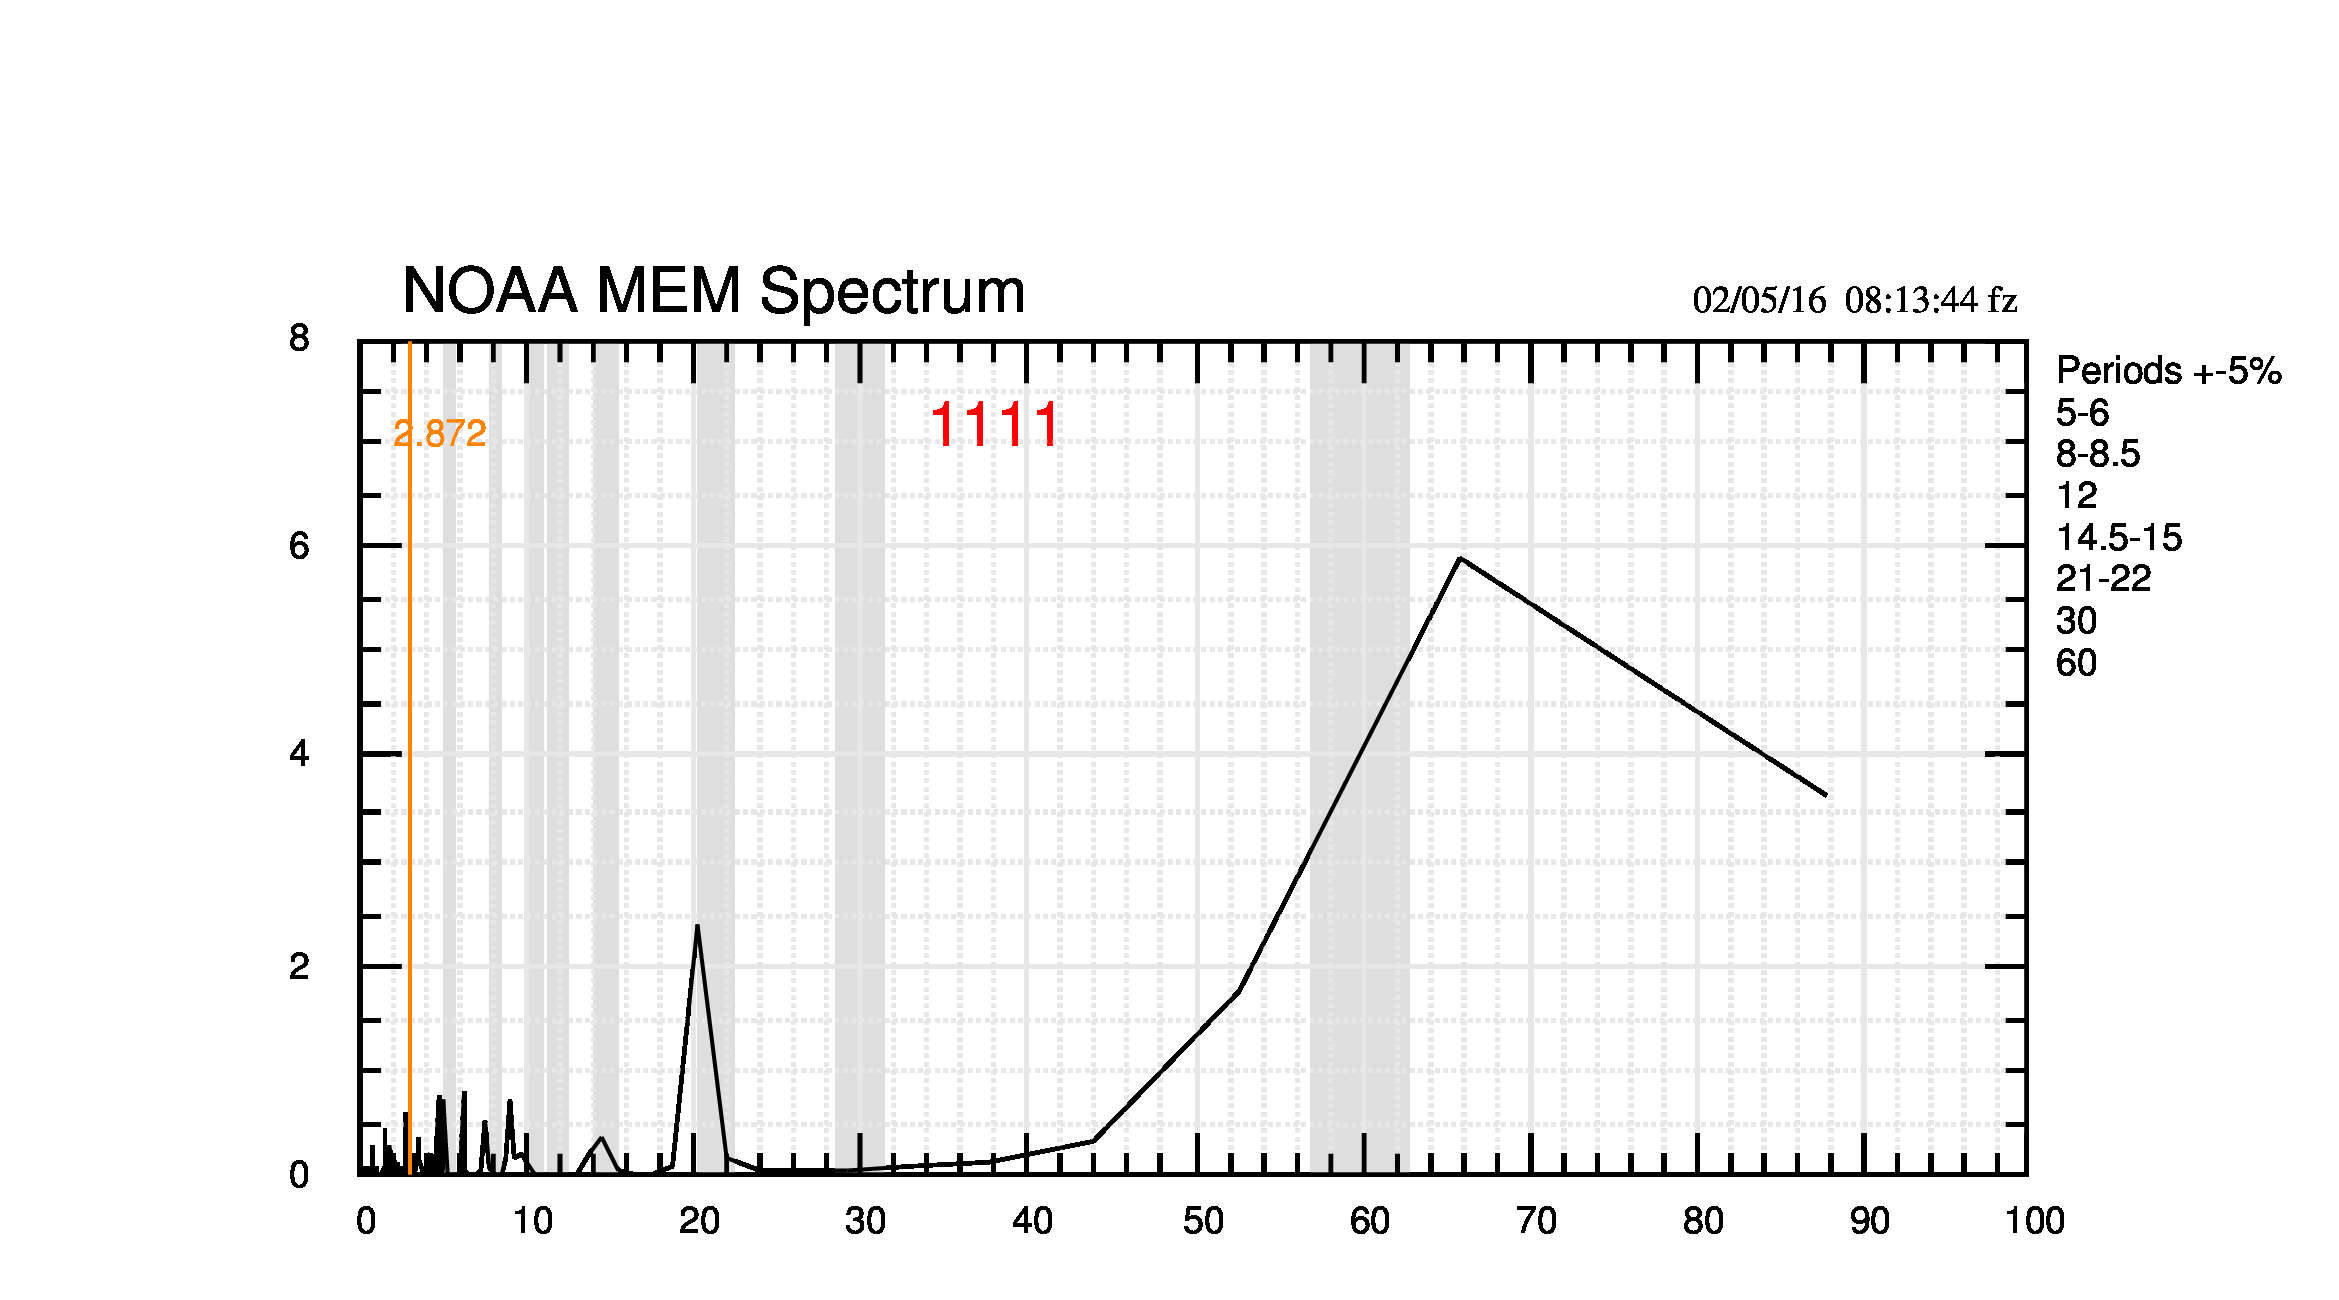 Fig.6. Immagine gif animata dell'evoluzione mensile dello spettro MEM calcolato su tutti i dati disponibili. Versione ridotta a un solo grafico, rispetto alla versione con tre grafici disponibile nel sito di supporto. La scala orizzontale è il periodo in anni; quella verticale lo spettro in unità generiche.